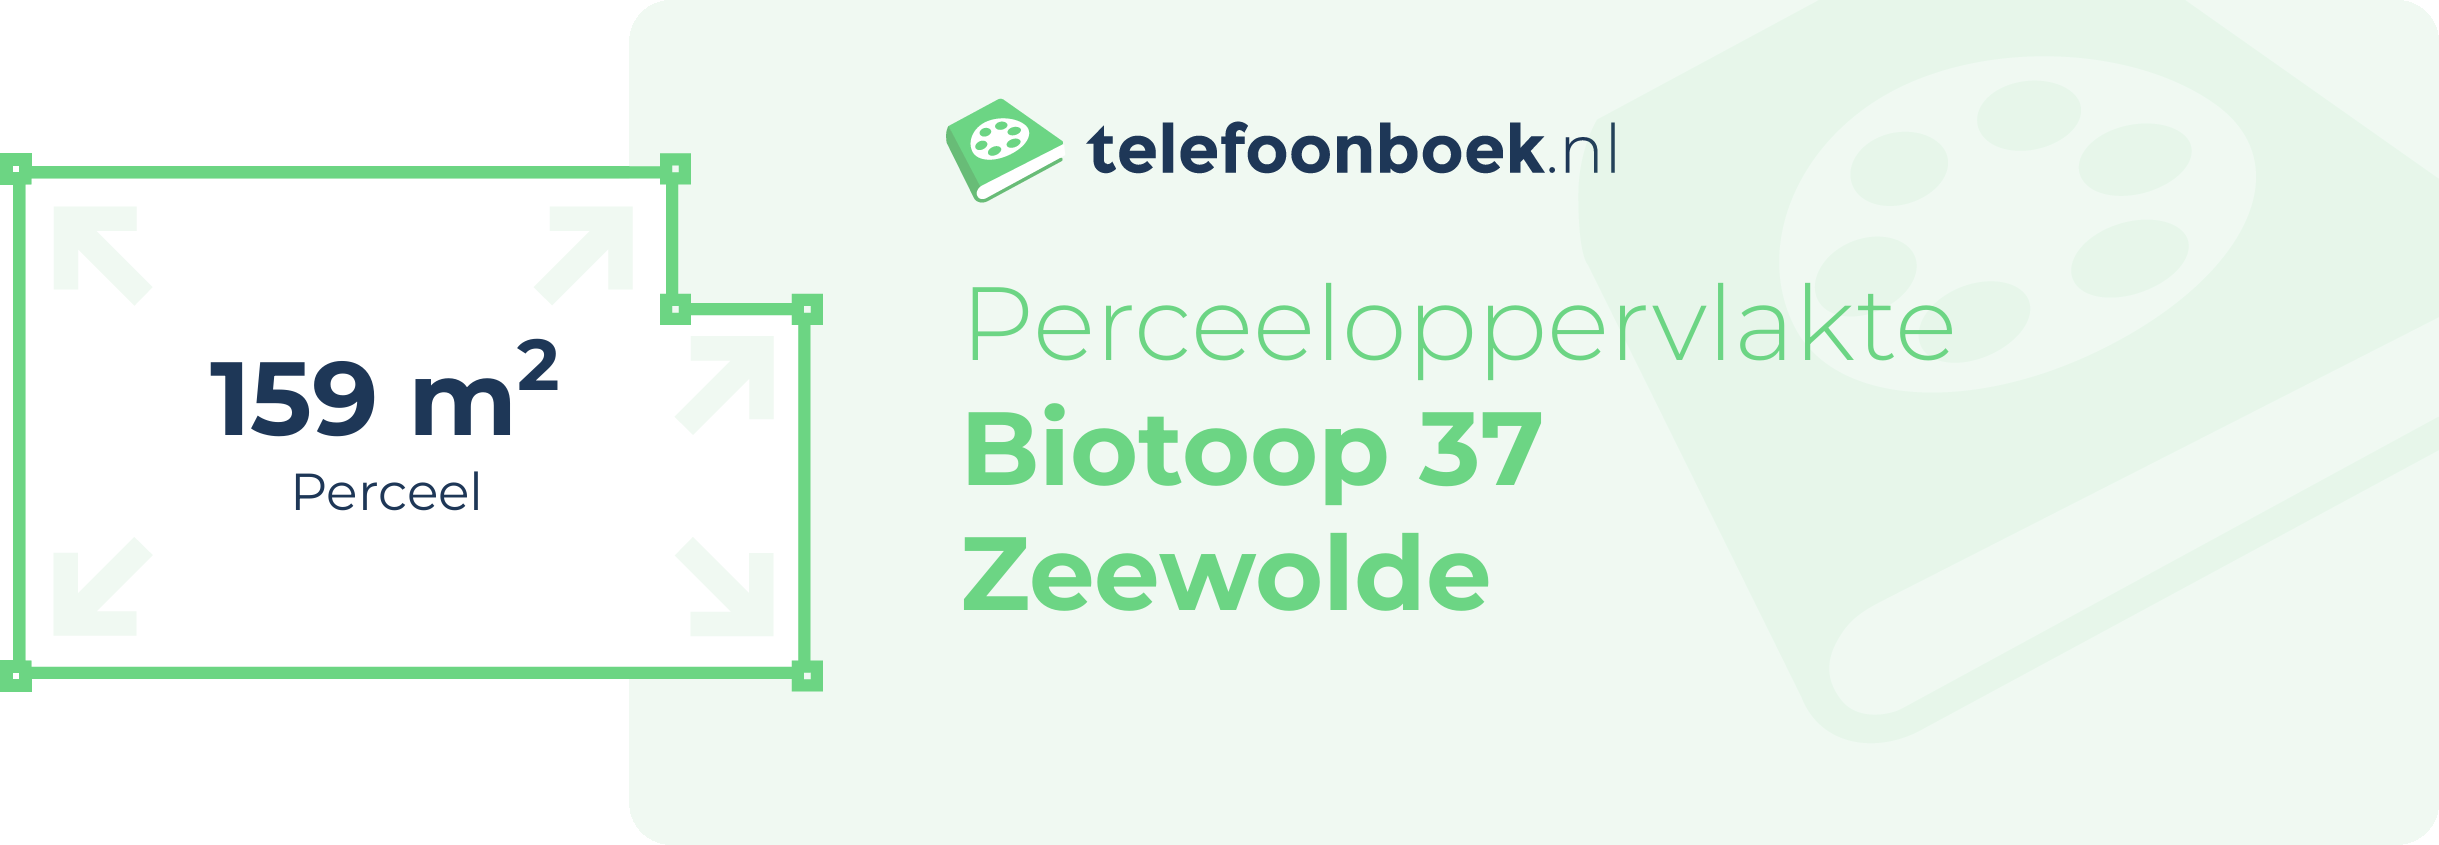 Perceeloppervlakte Biotoop 37 Zeewolde